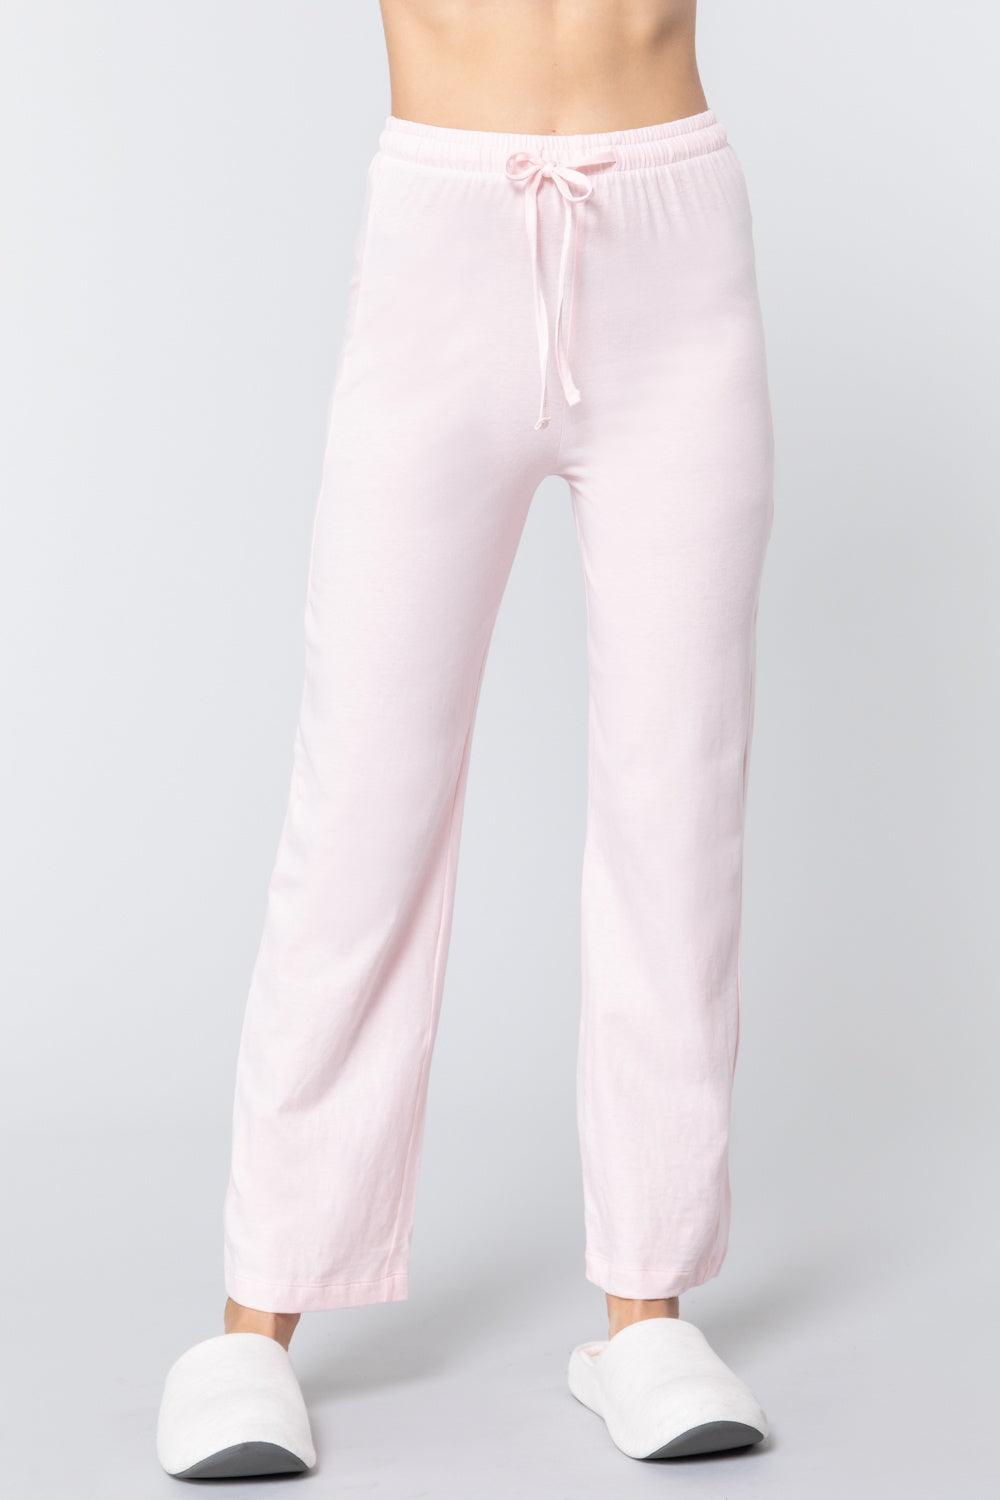 Solid Cotton Pajama Pants Naughty Smile Fashion